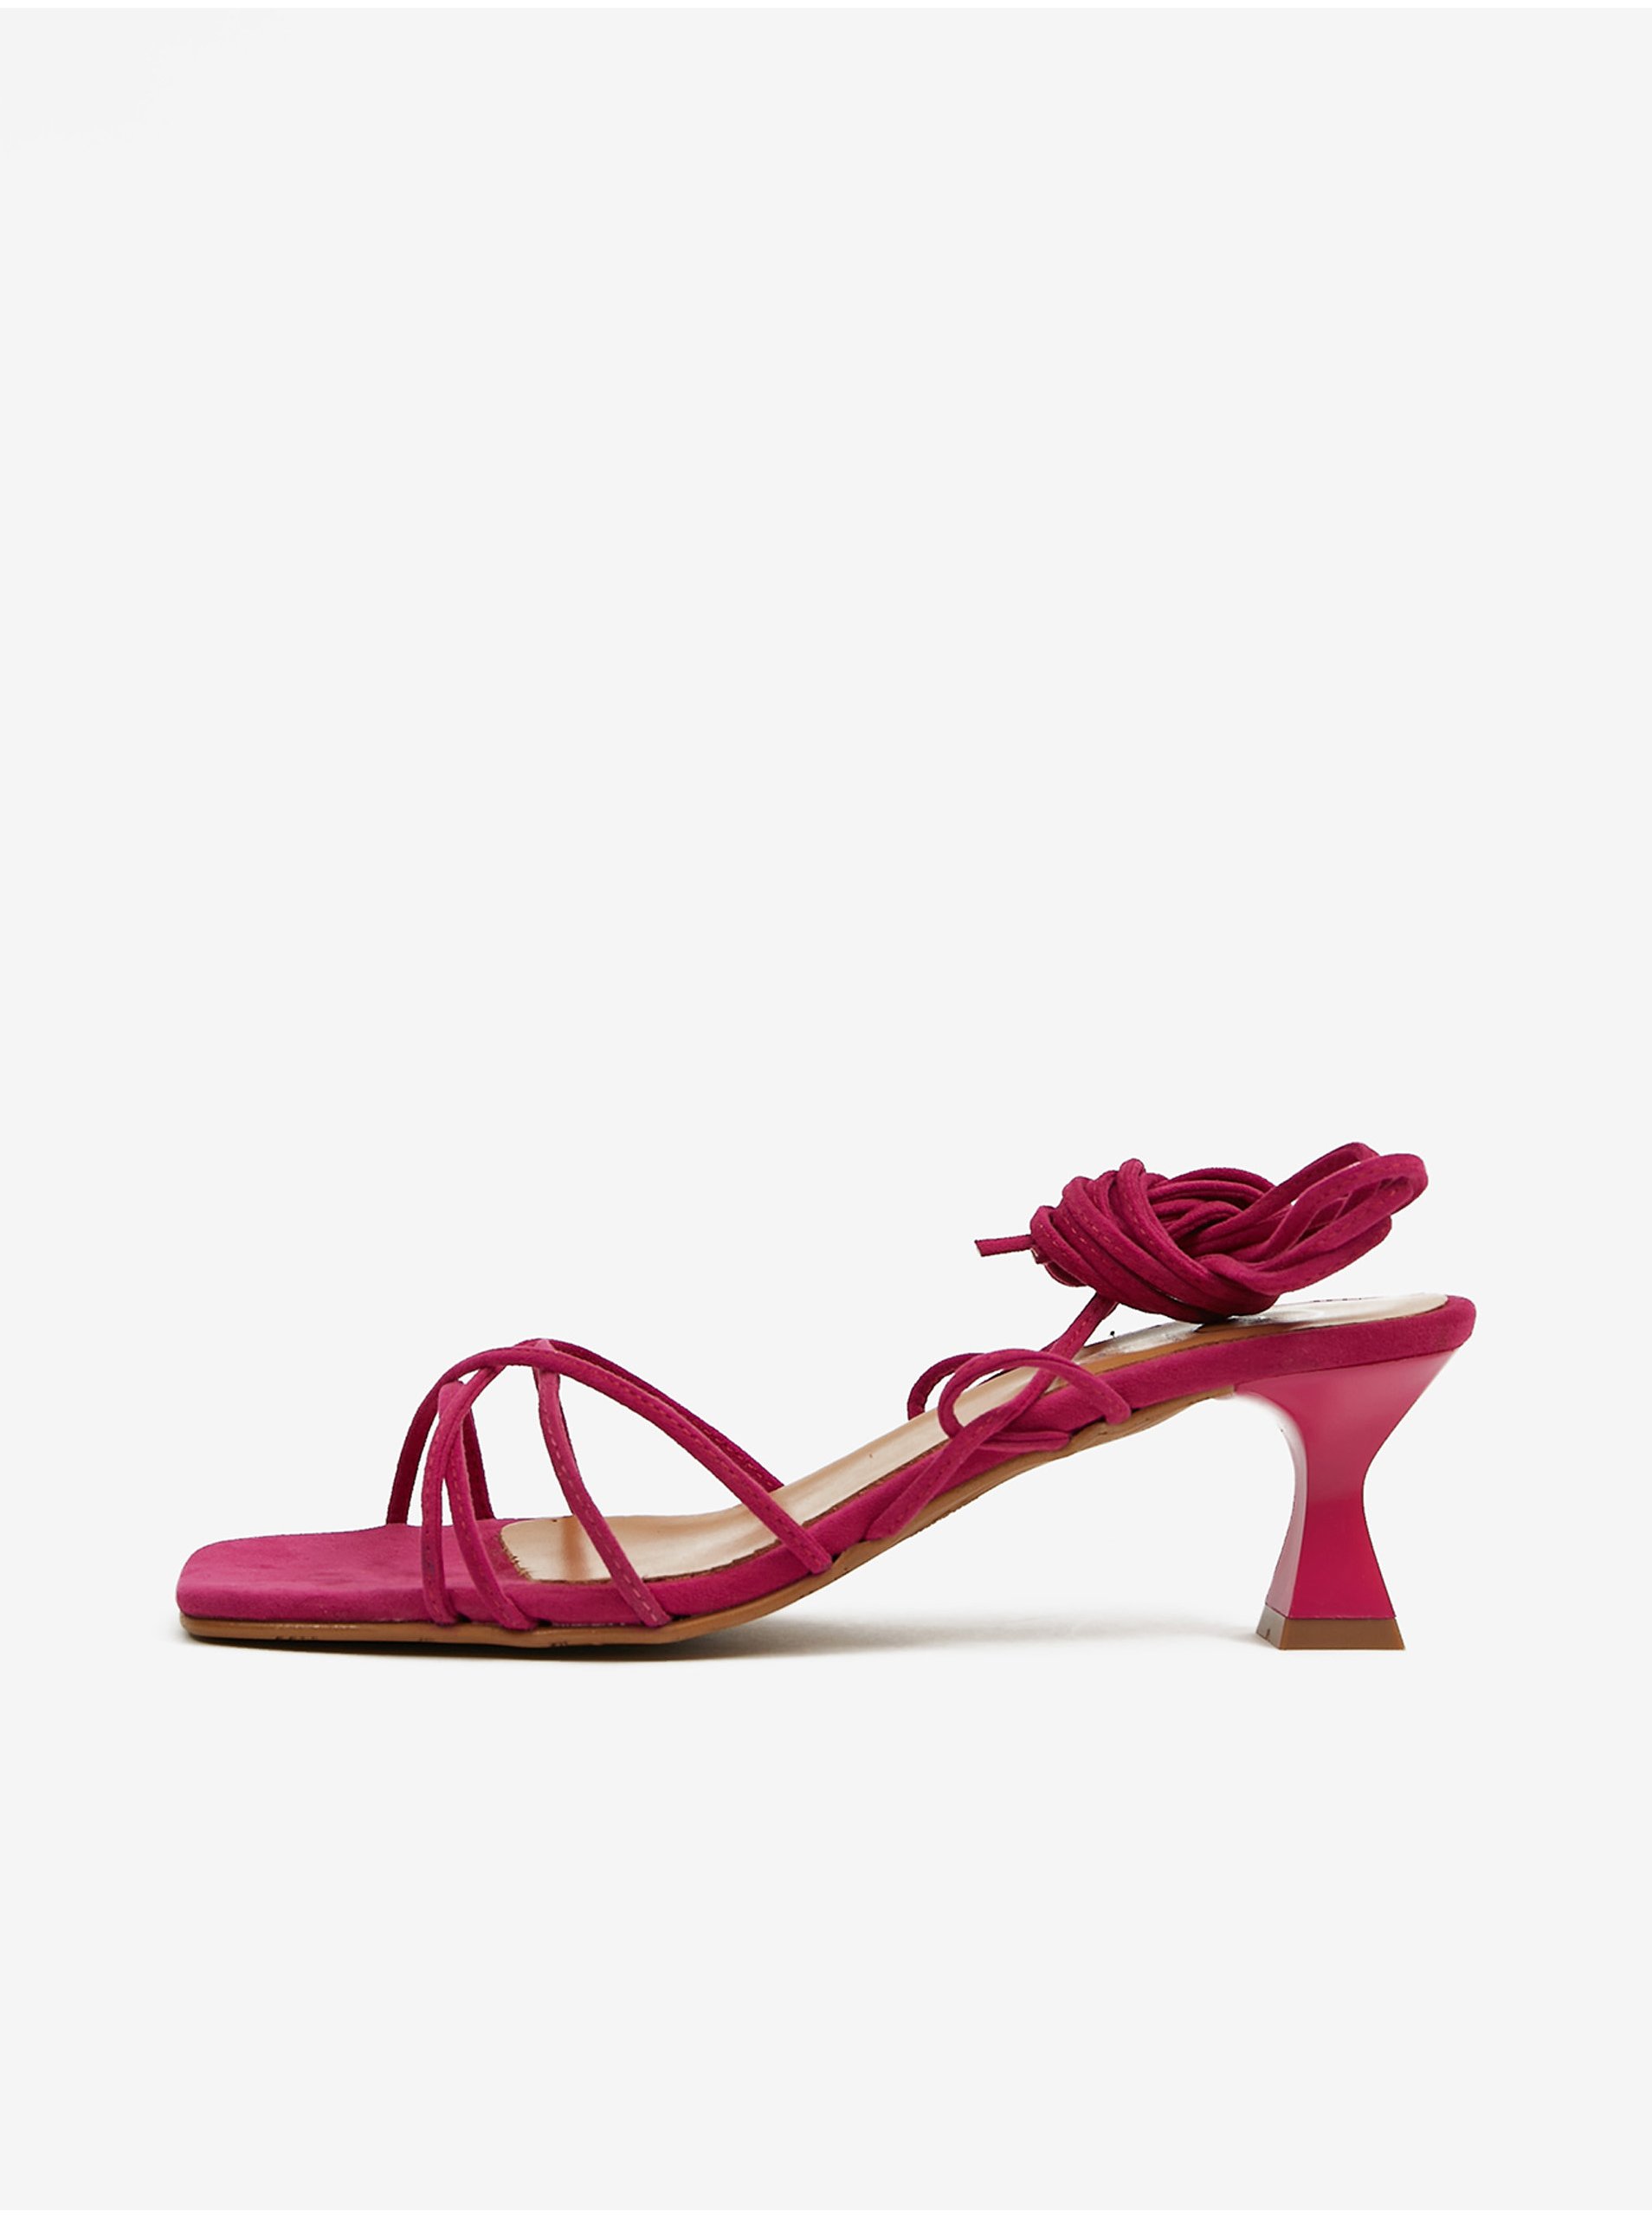 E-shop Tmavě růžové dámské šněrovací sandály v semišové úpravě na podpatku OJJU